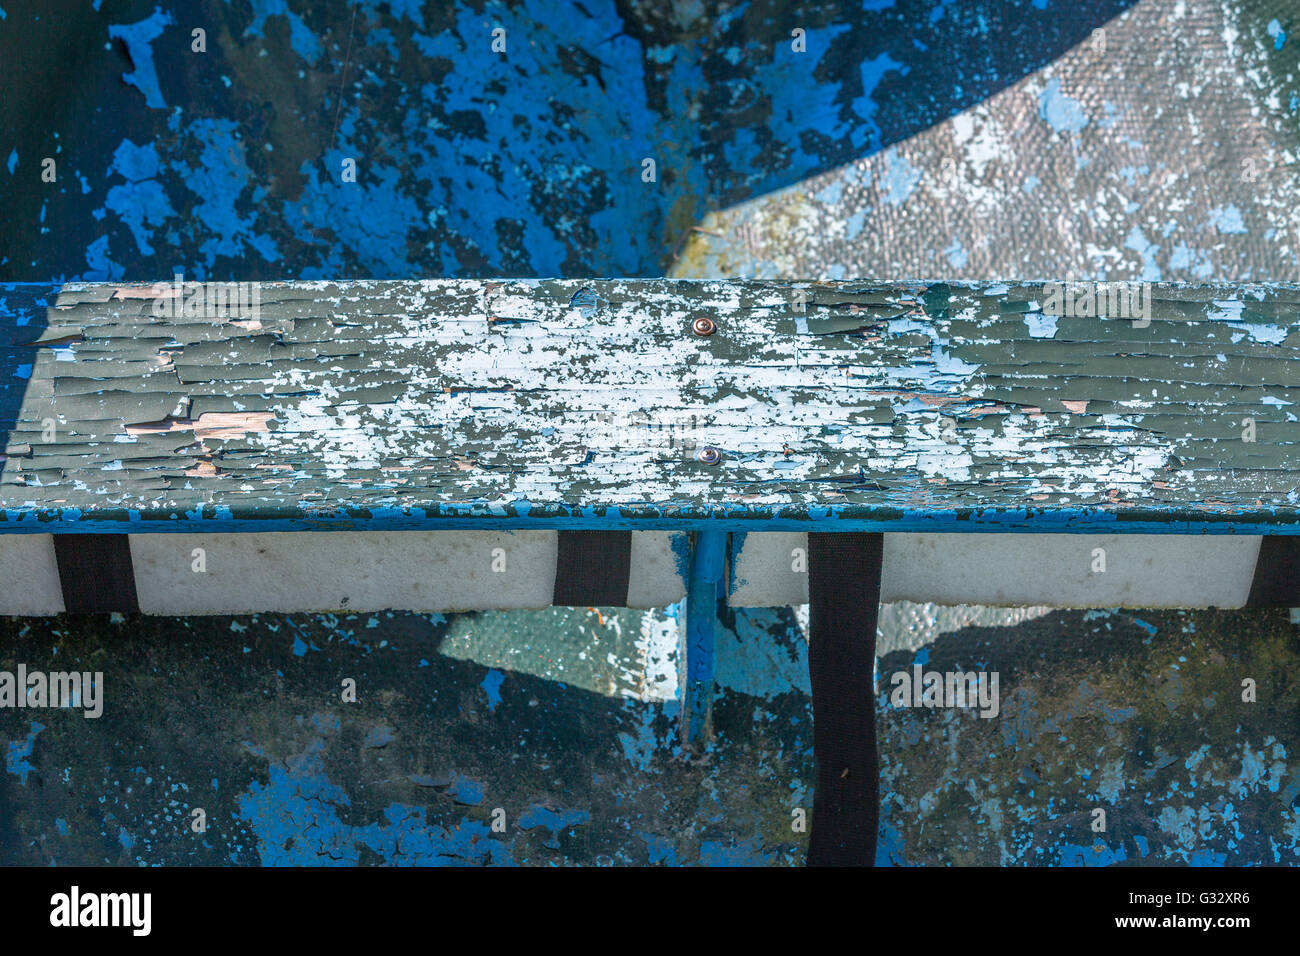 Detail-Bild von einer alten Fiberglasboot Verlegung in einem verwilderten Garten Stockfoto